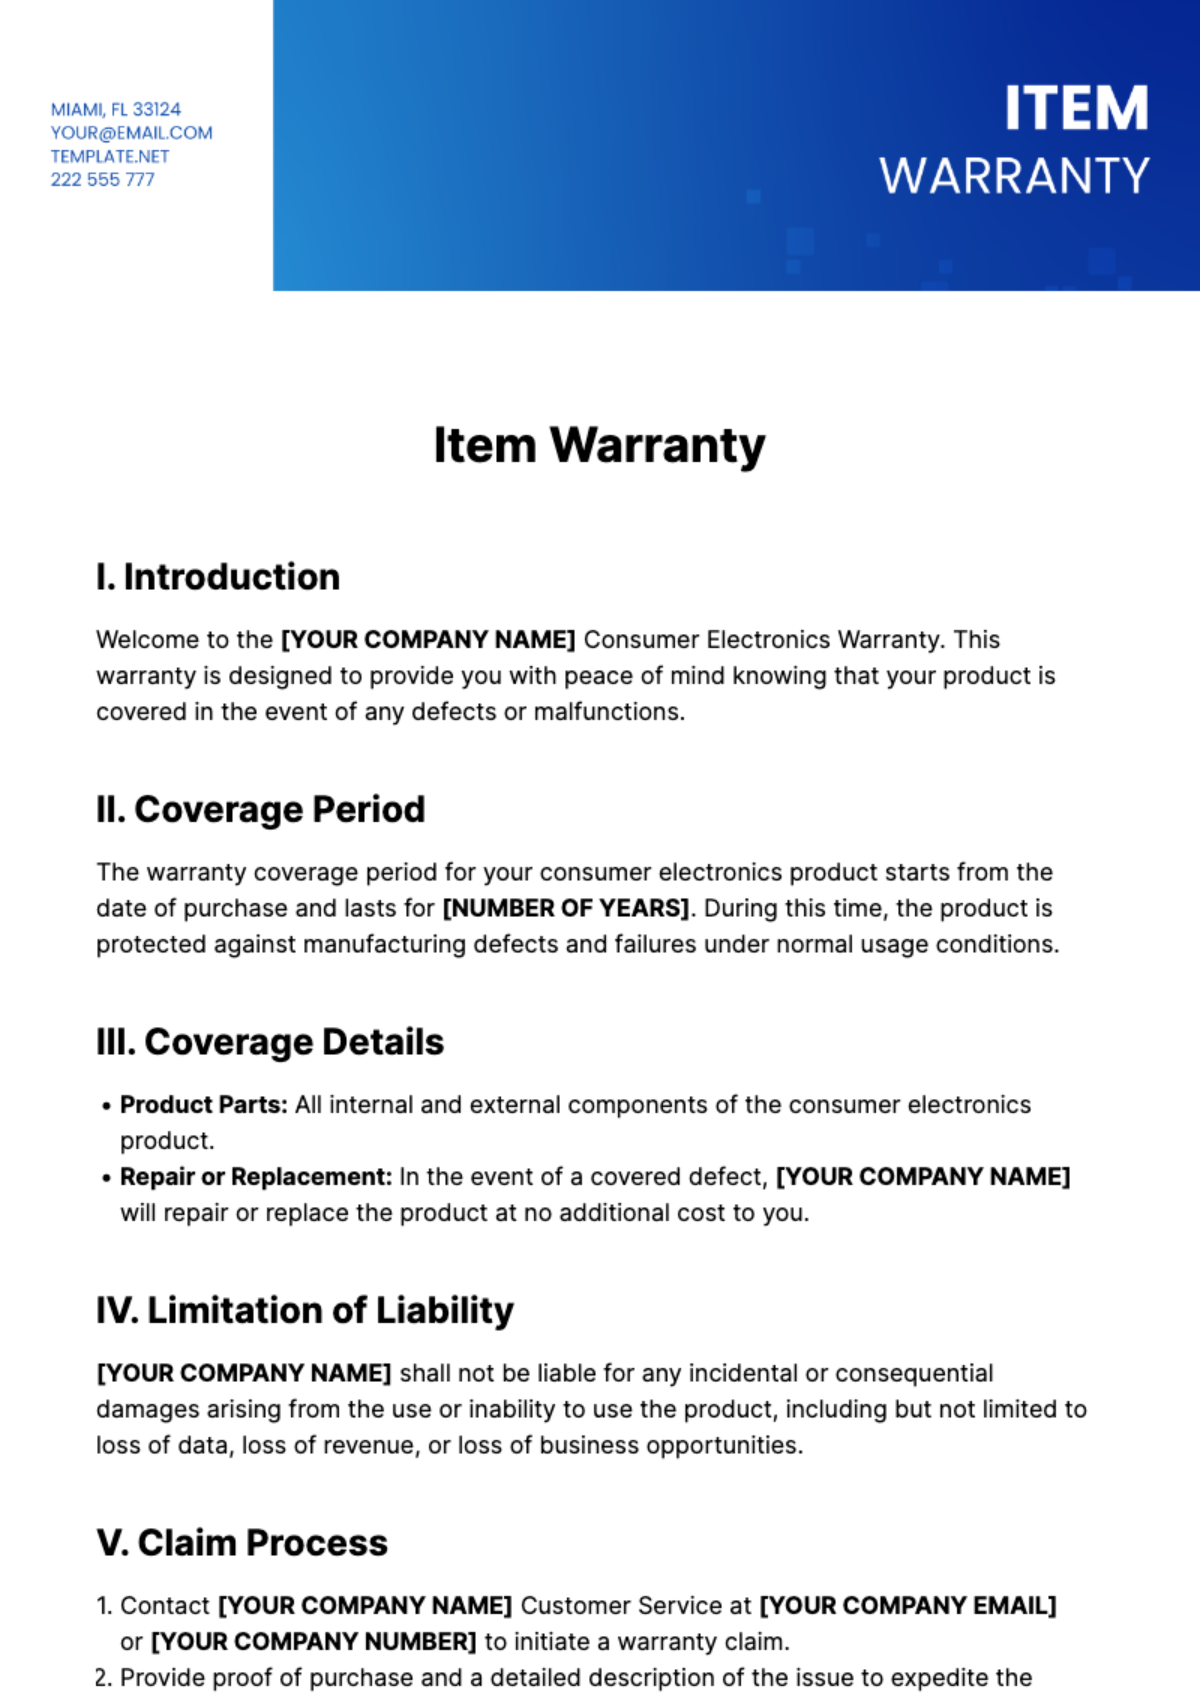 Free Item Warranty Template